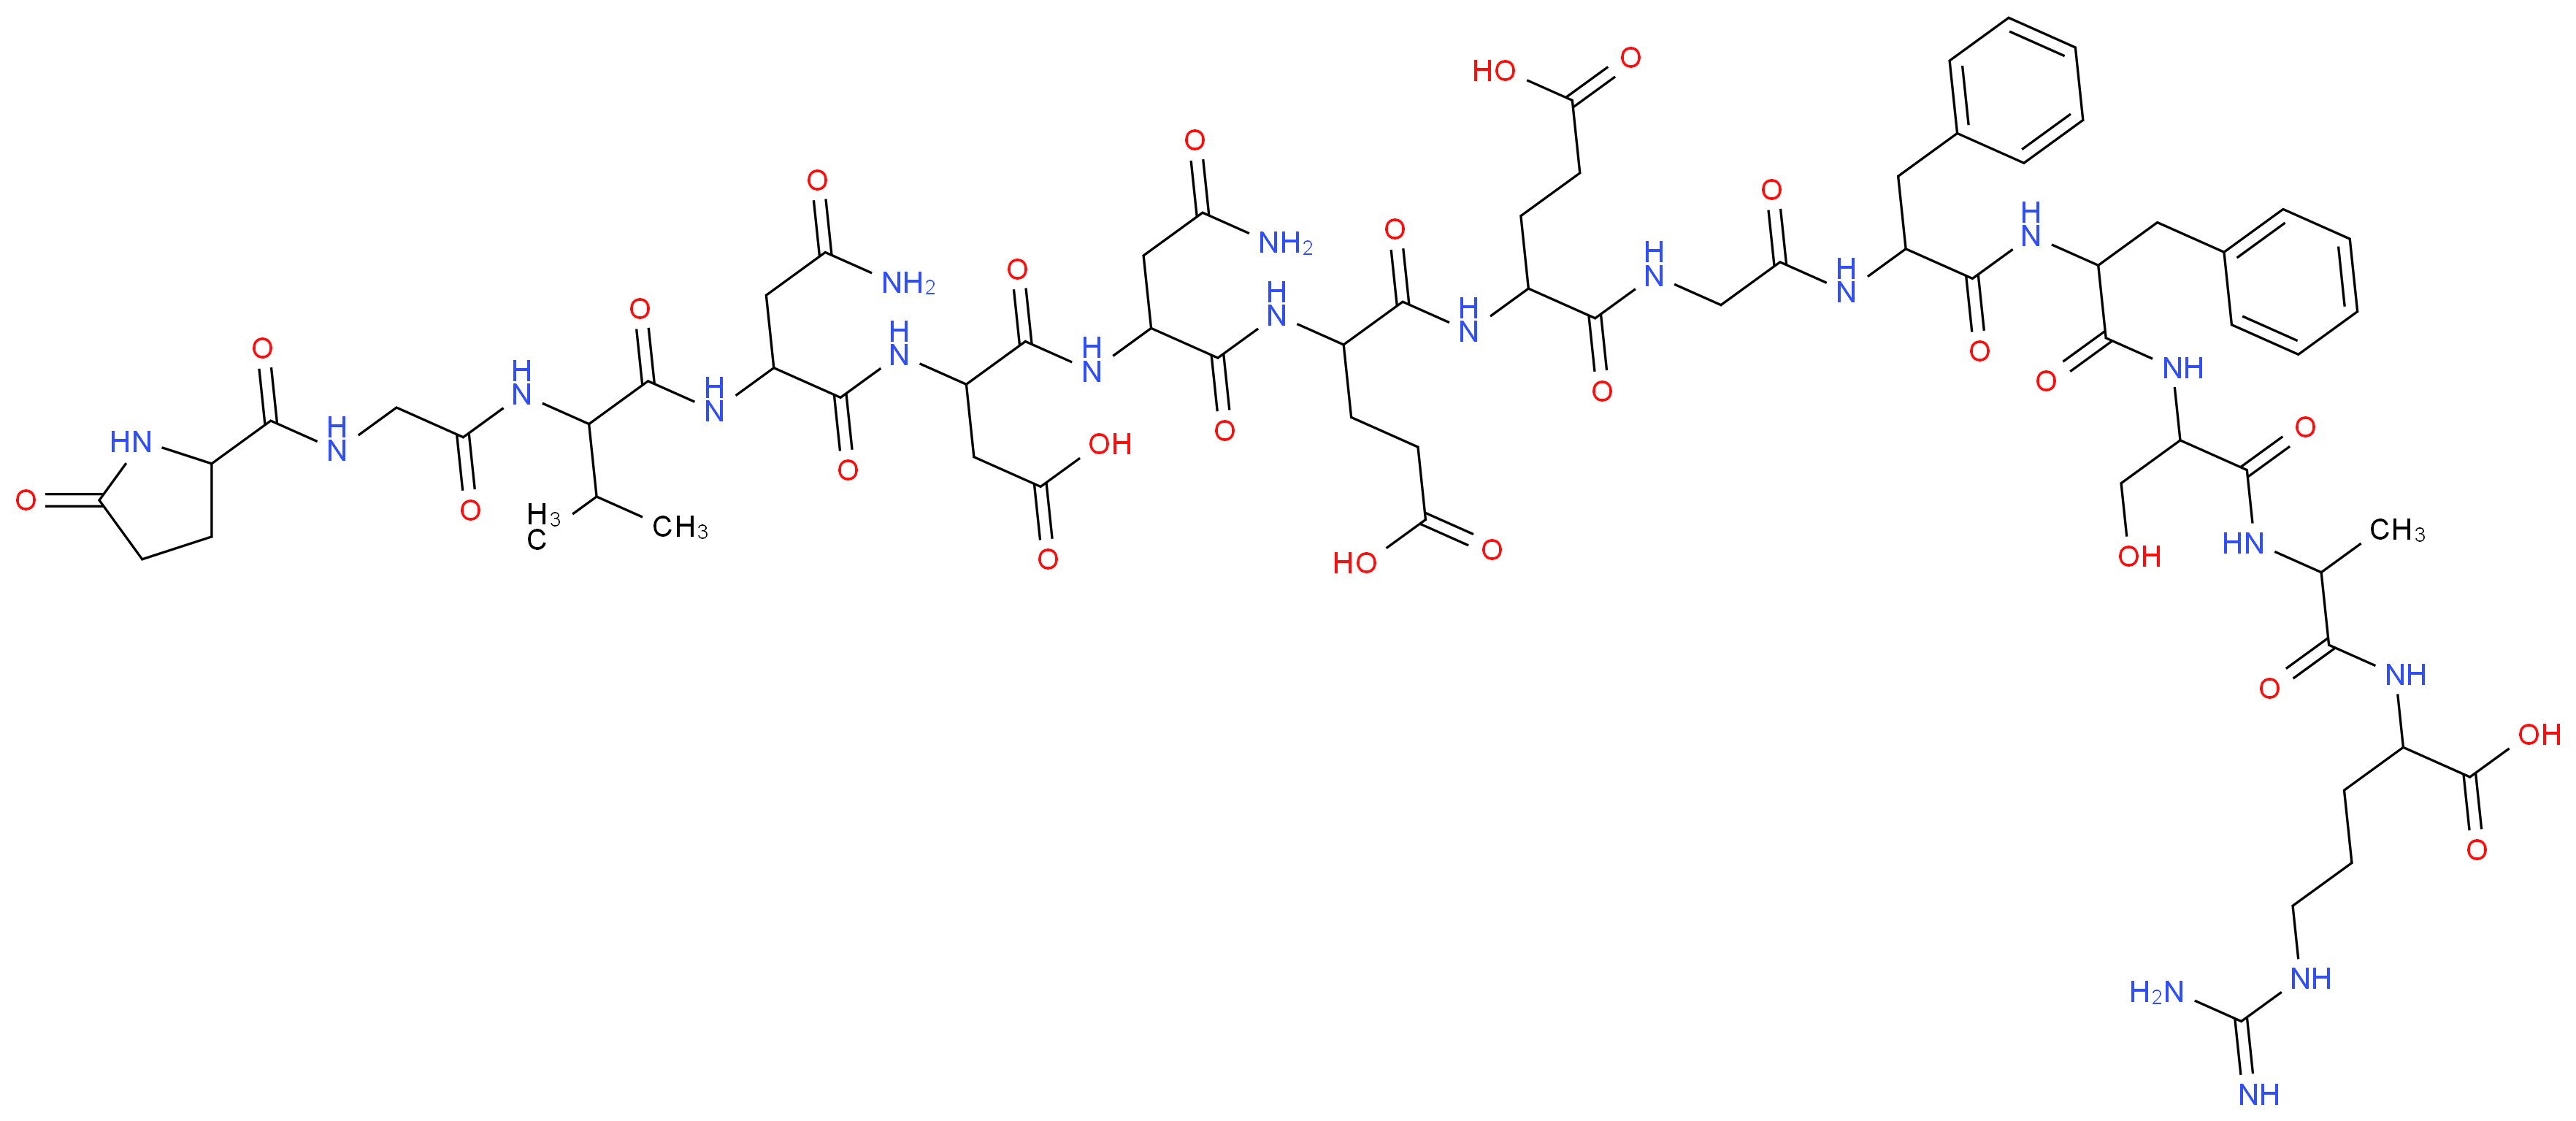 36204-23-6 molecular structure